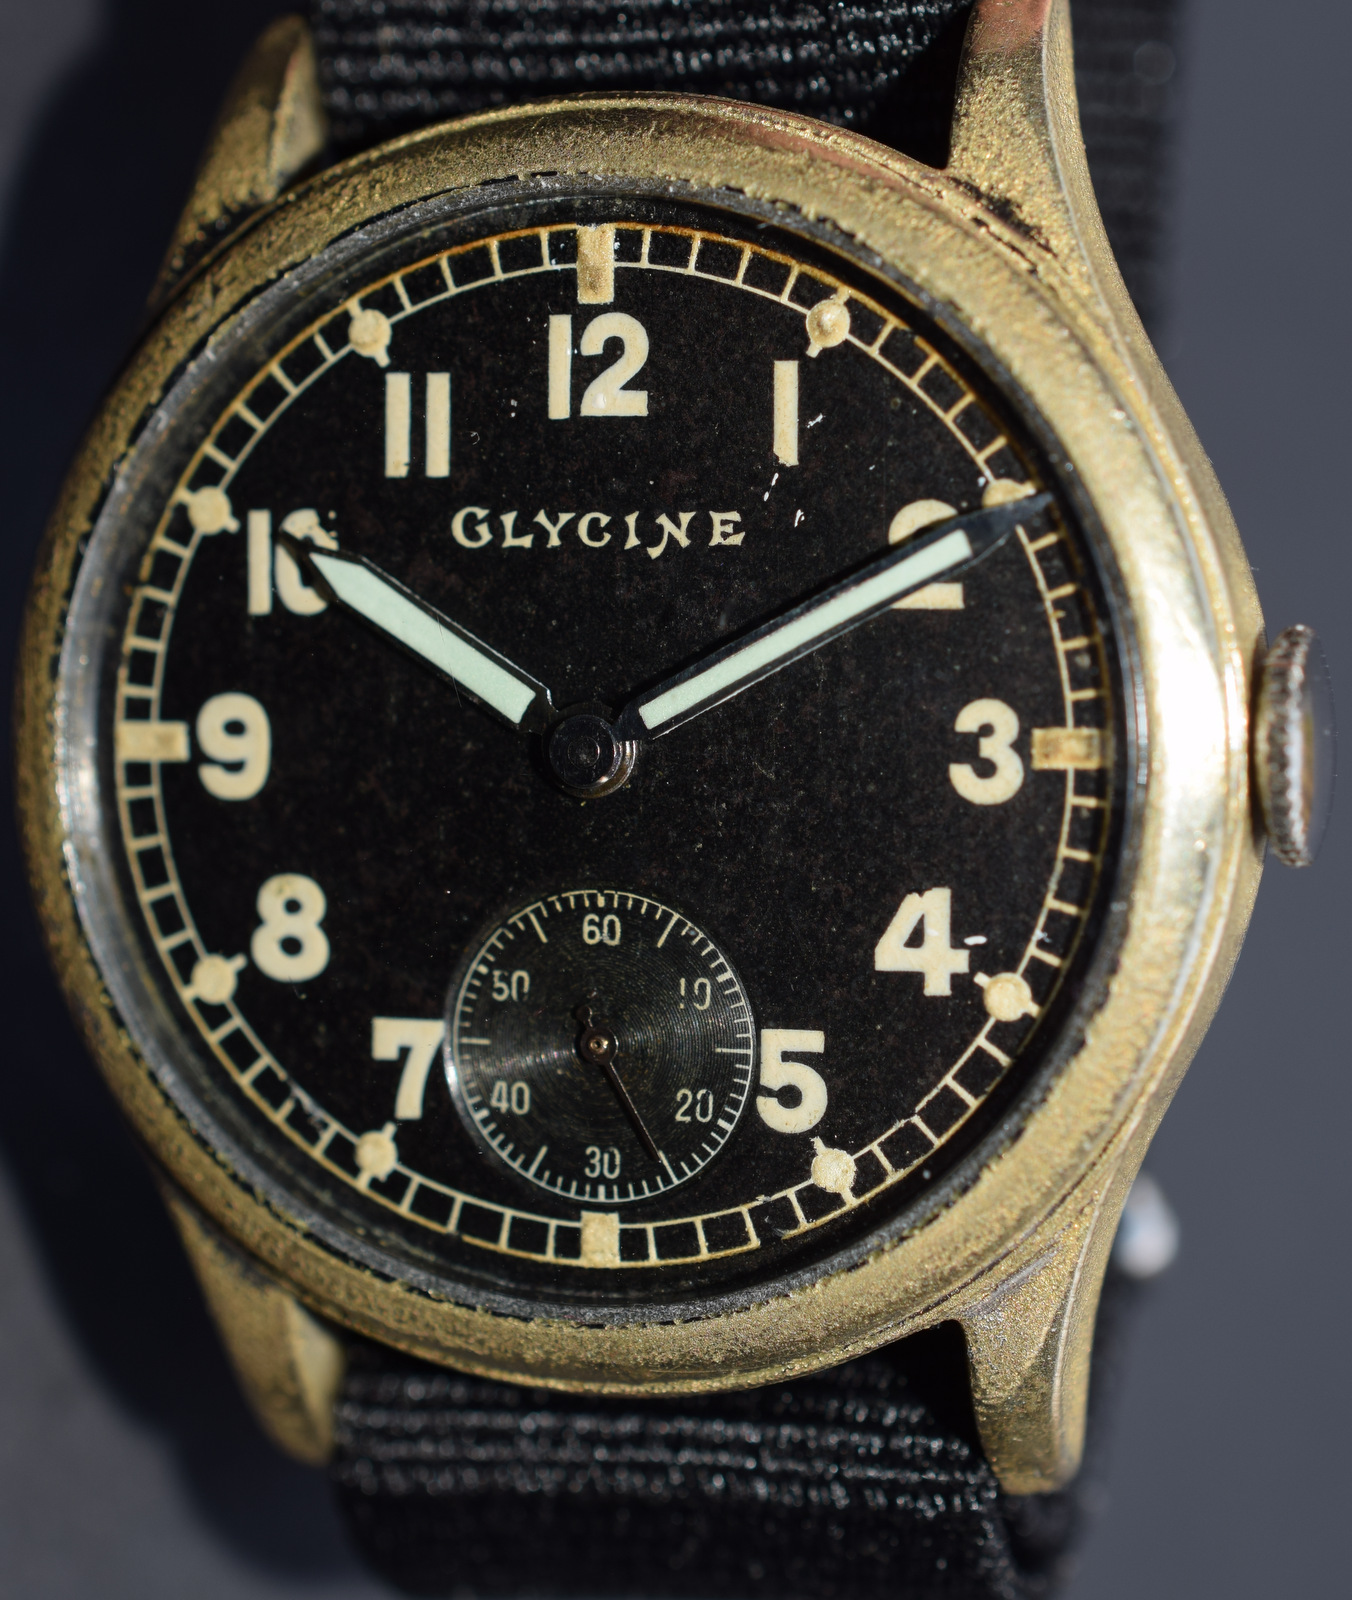 WW2 Glycine German Military Watch - Image 6 of 6